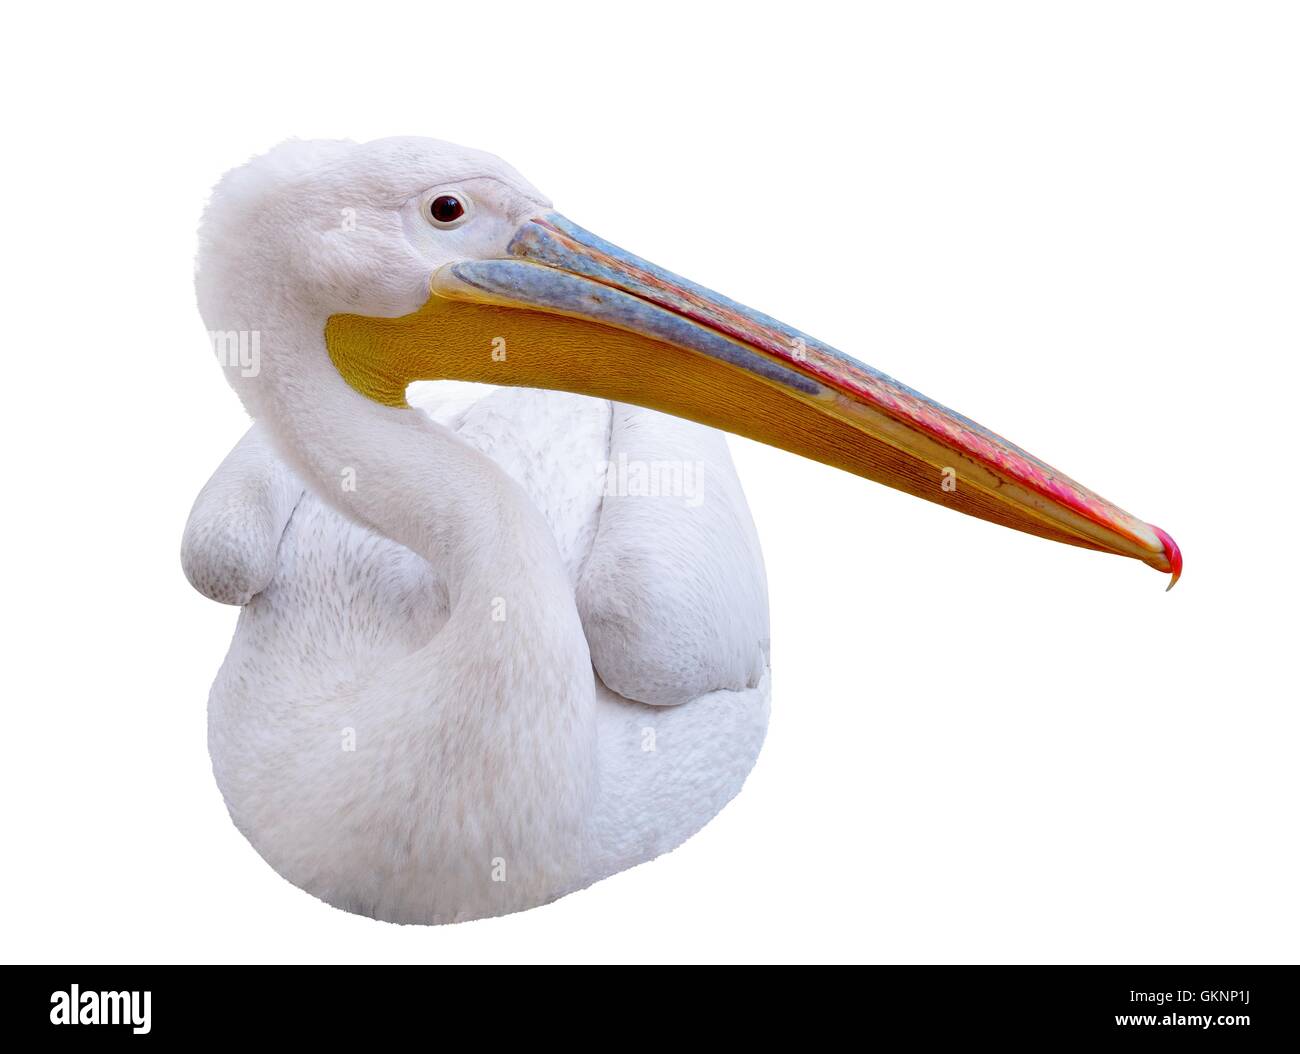 Pelican seduta lateralmente guarda nell'immagine. Foto Stock